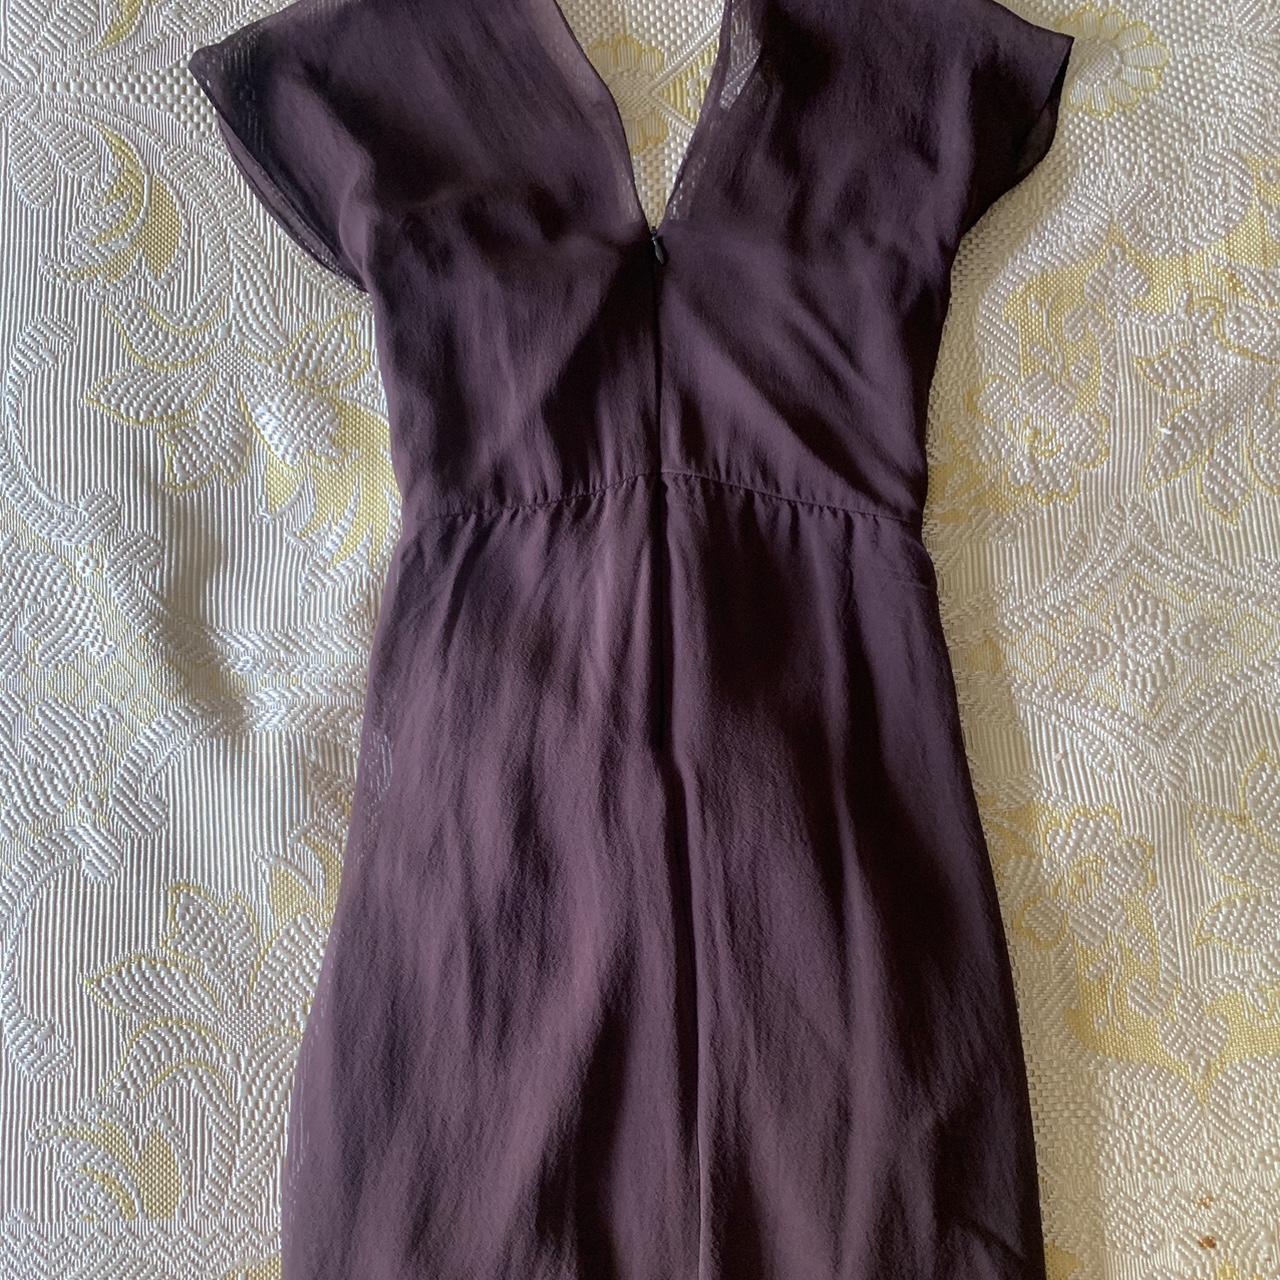 Diane von Furstenberg Women's Burgundy and Brown Dress (3)